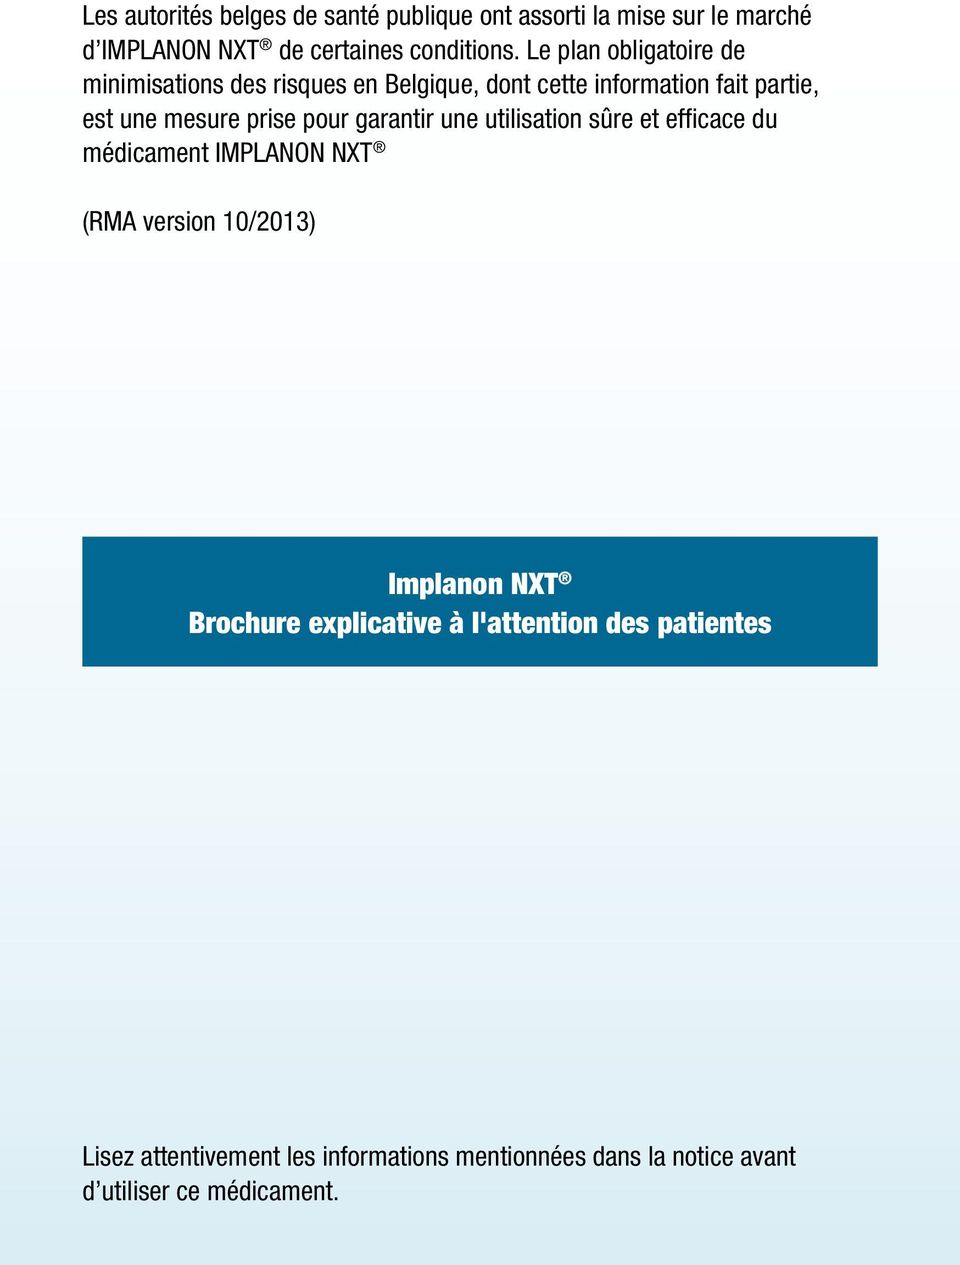 pour garantir une utilisation sûre et efficace du médicament IMPLANON NXT (RMA version 10/2013) Implanon NXT Brochure